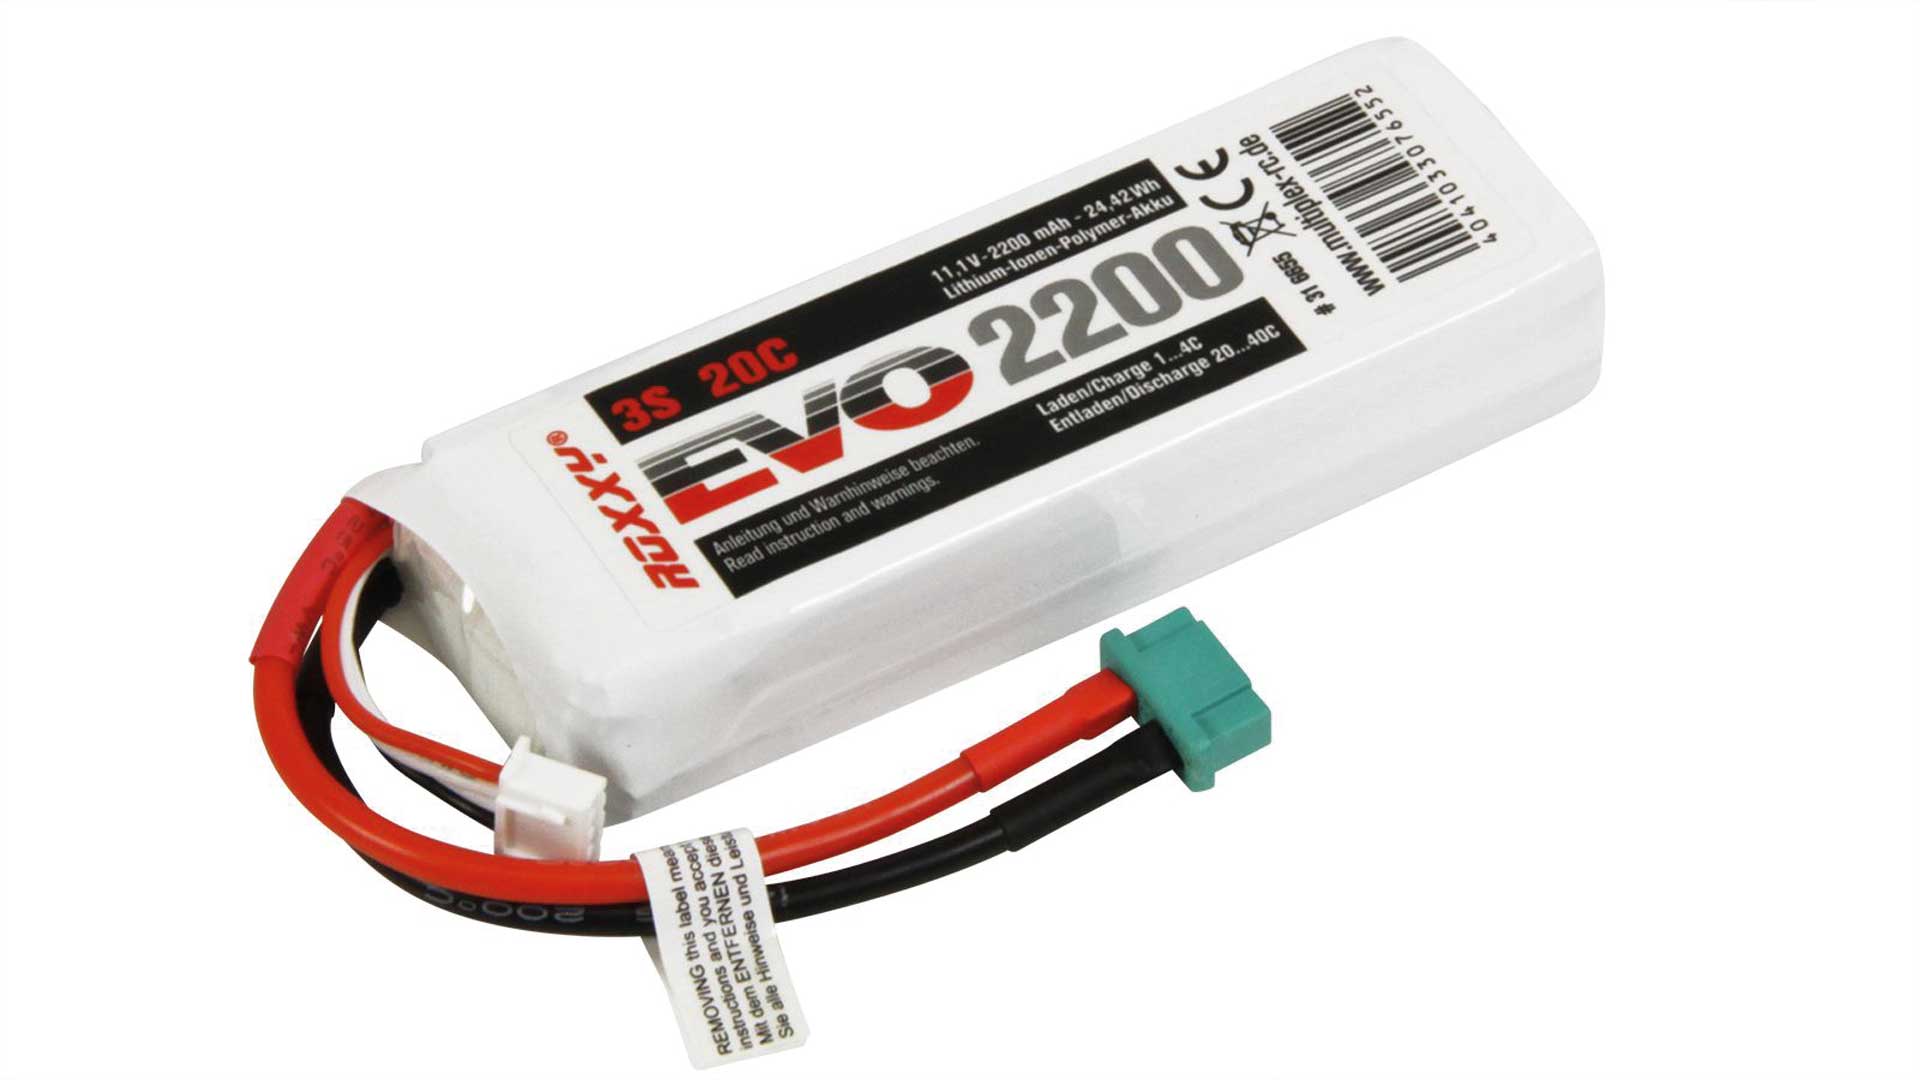 ROXXY EVO LiPo 2200mah 11.1V 20C battery